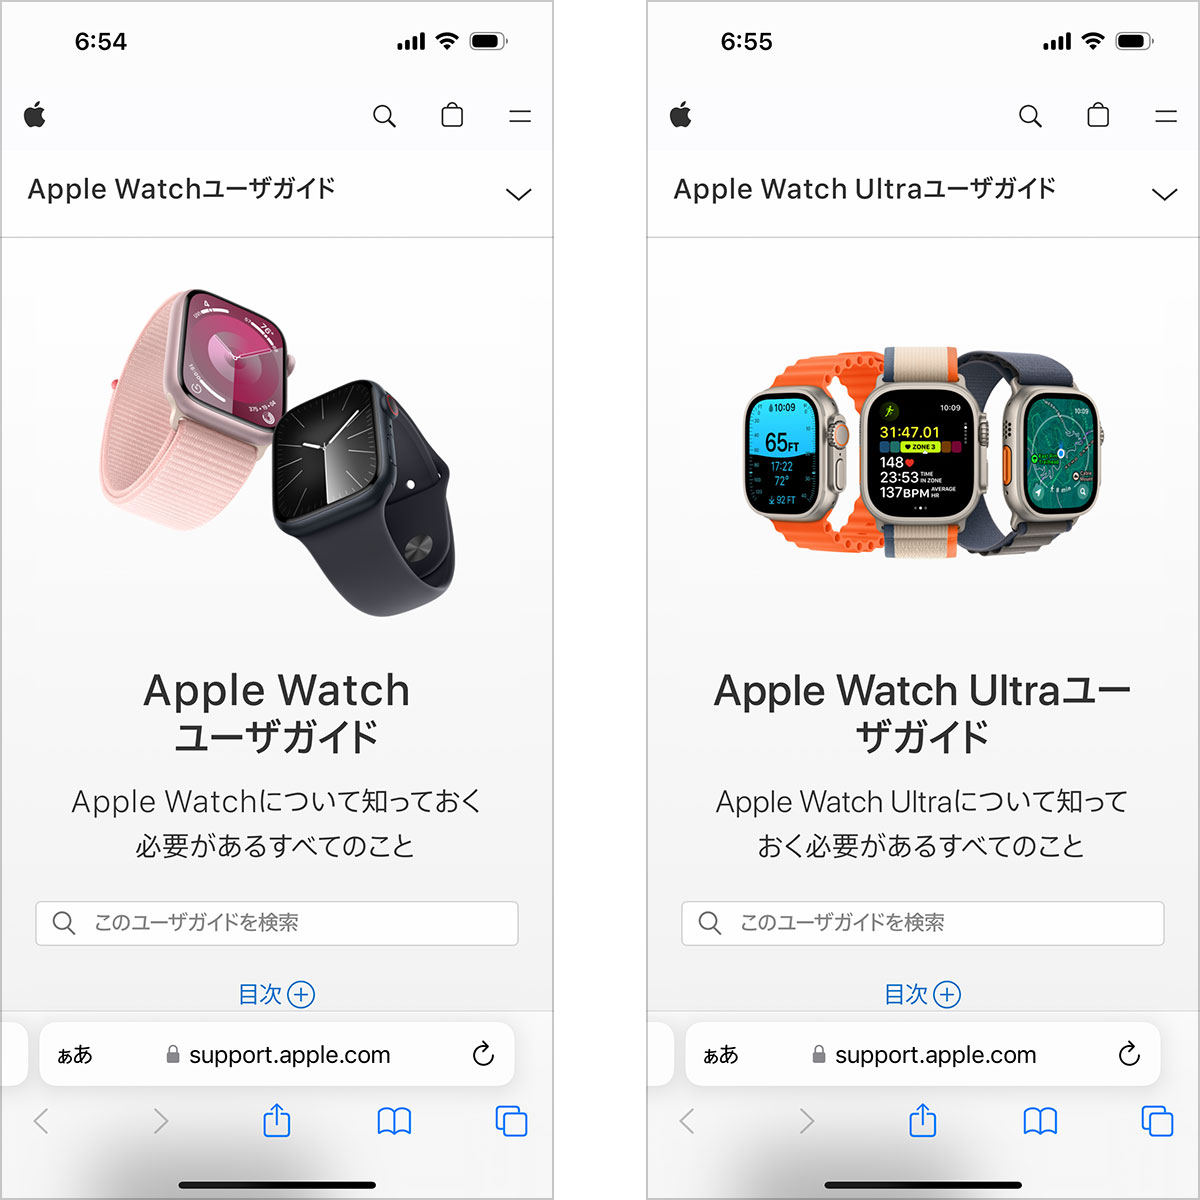 Apple Watch/Apple Watch Ultraユーザガイド